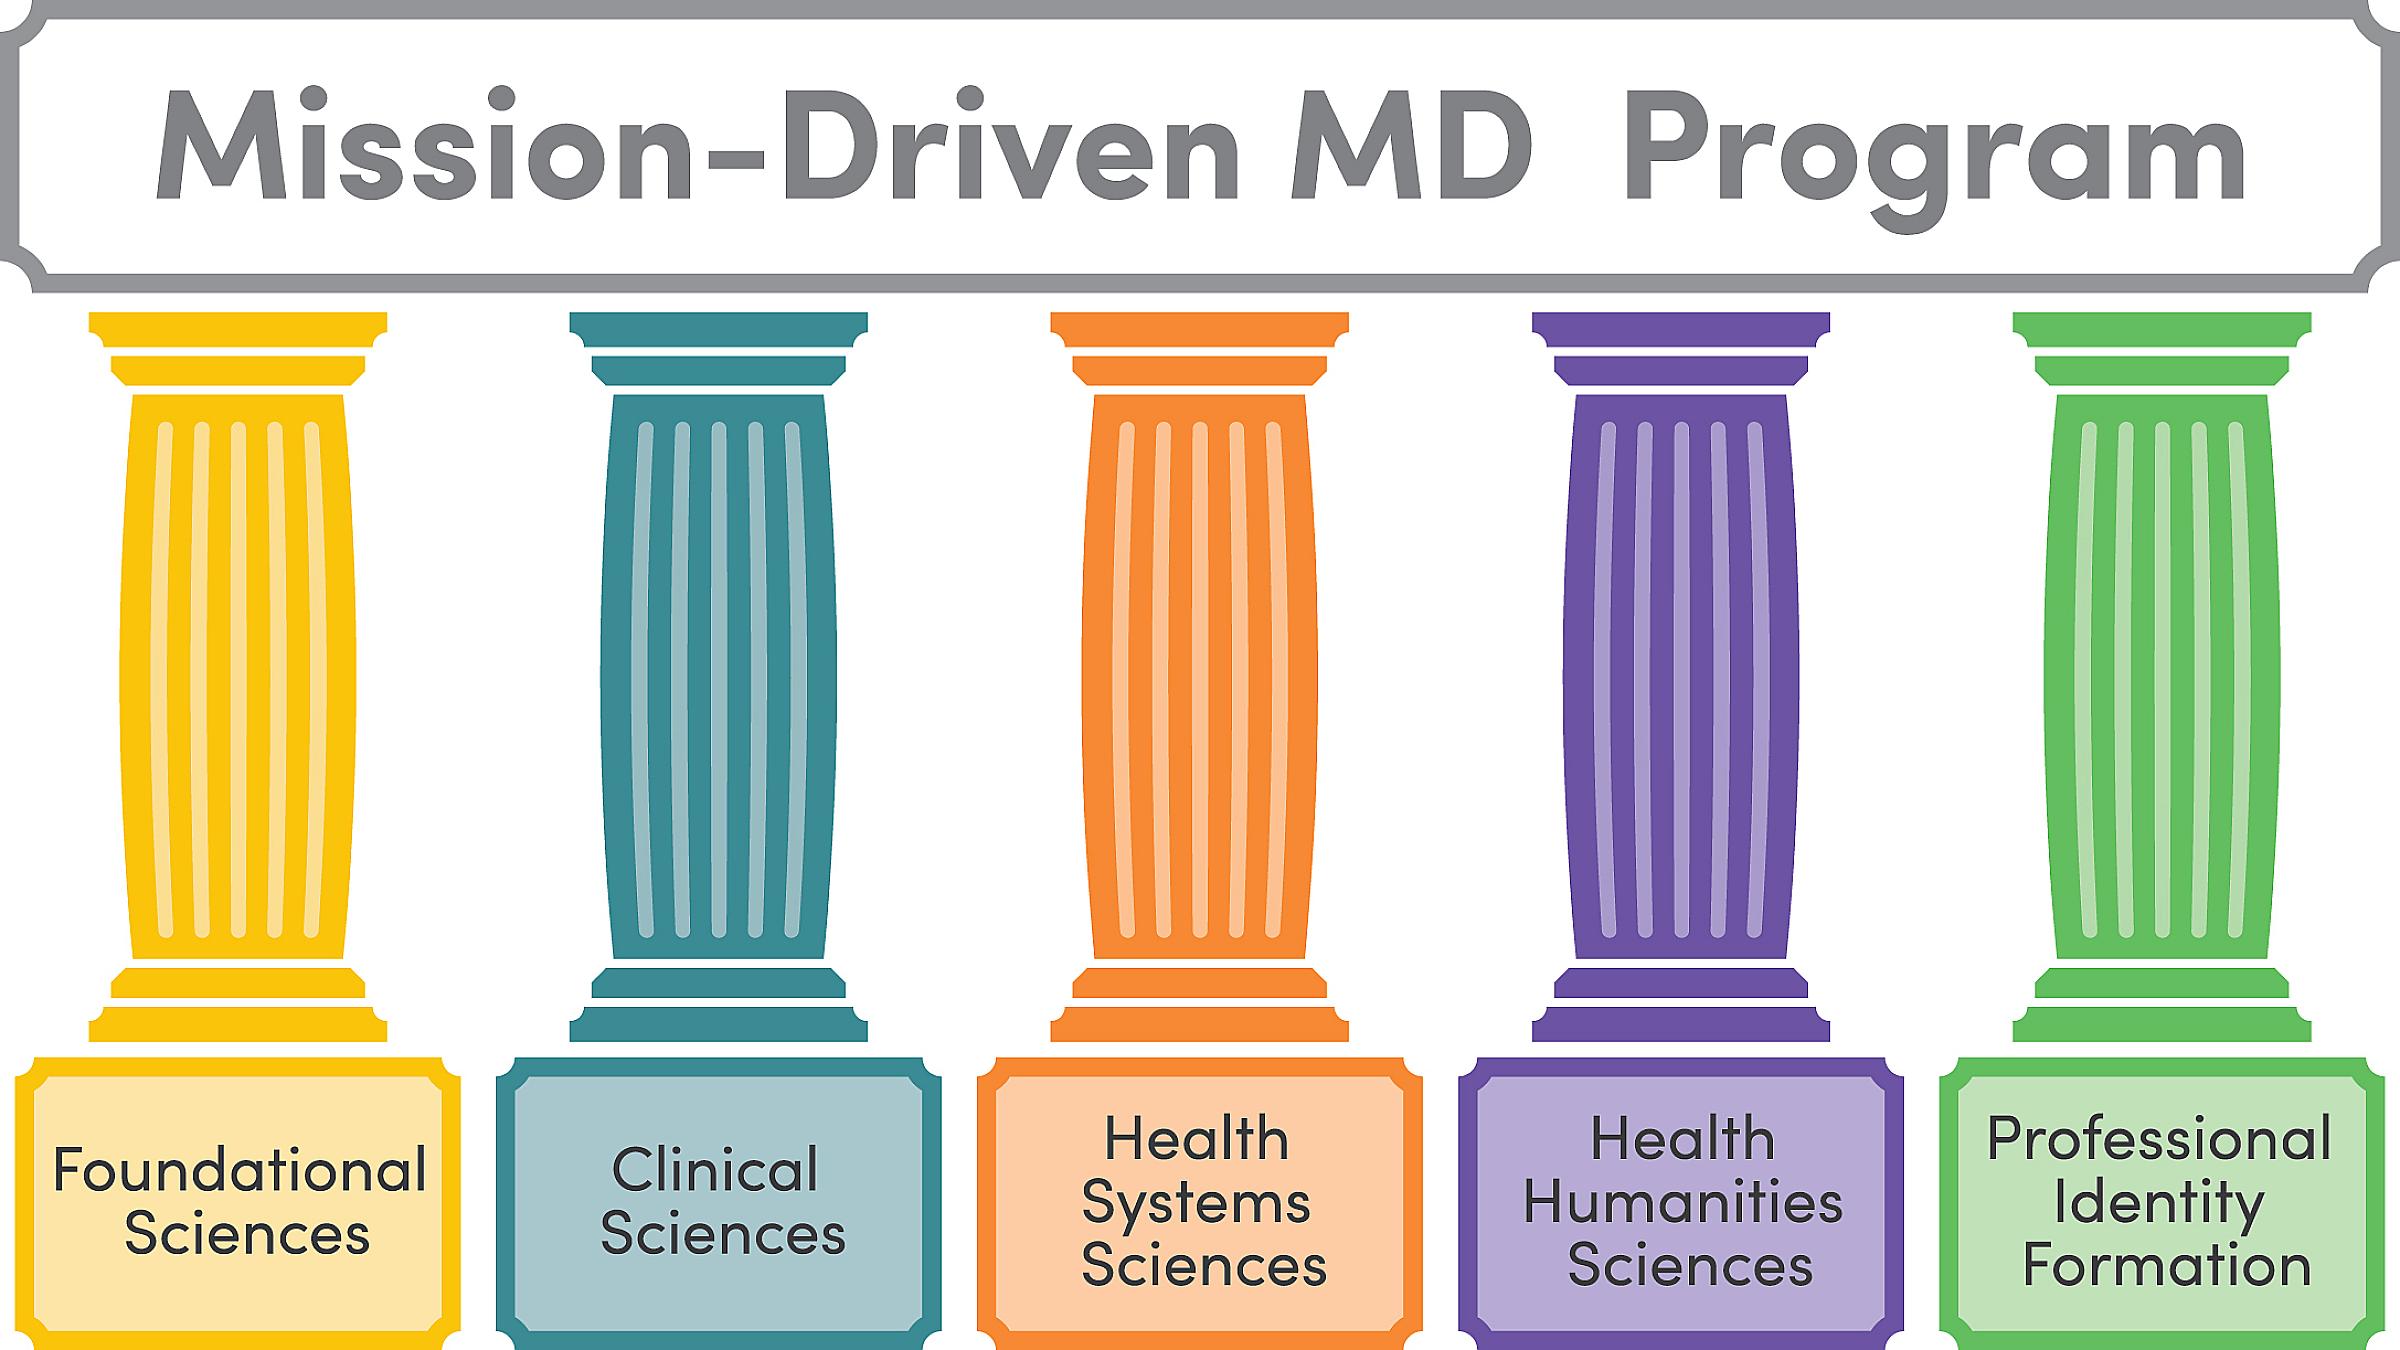 Mission-Driven MD Program Pillars